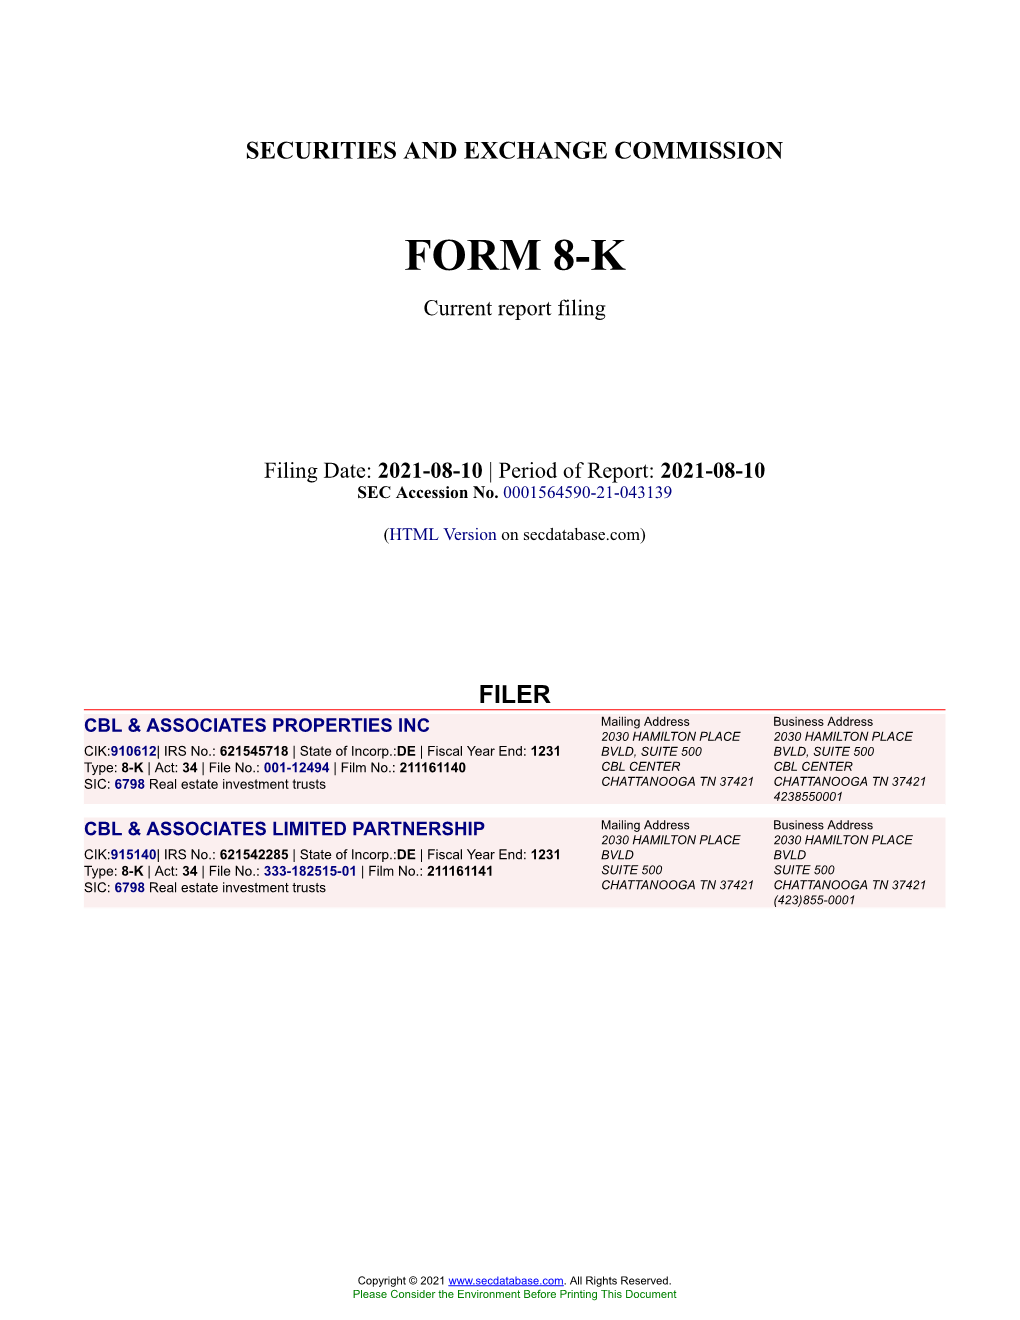 CBL & ASSOCIATES PROPERTIES INC Form 8-K Current Event Report